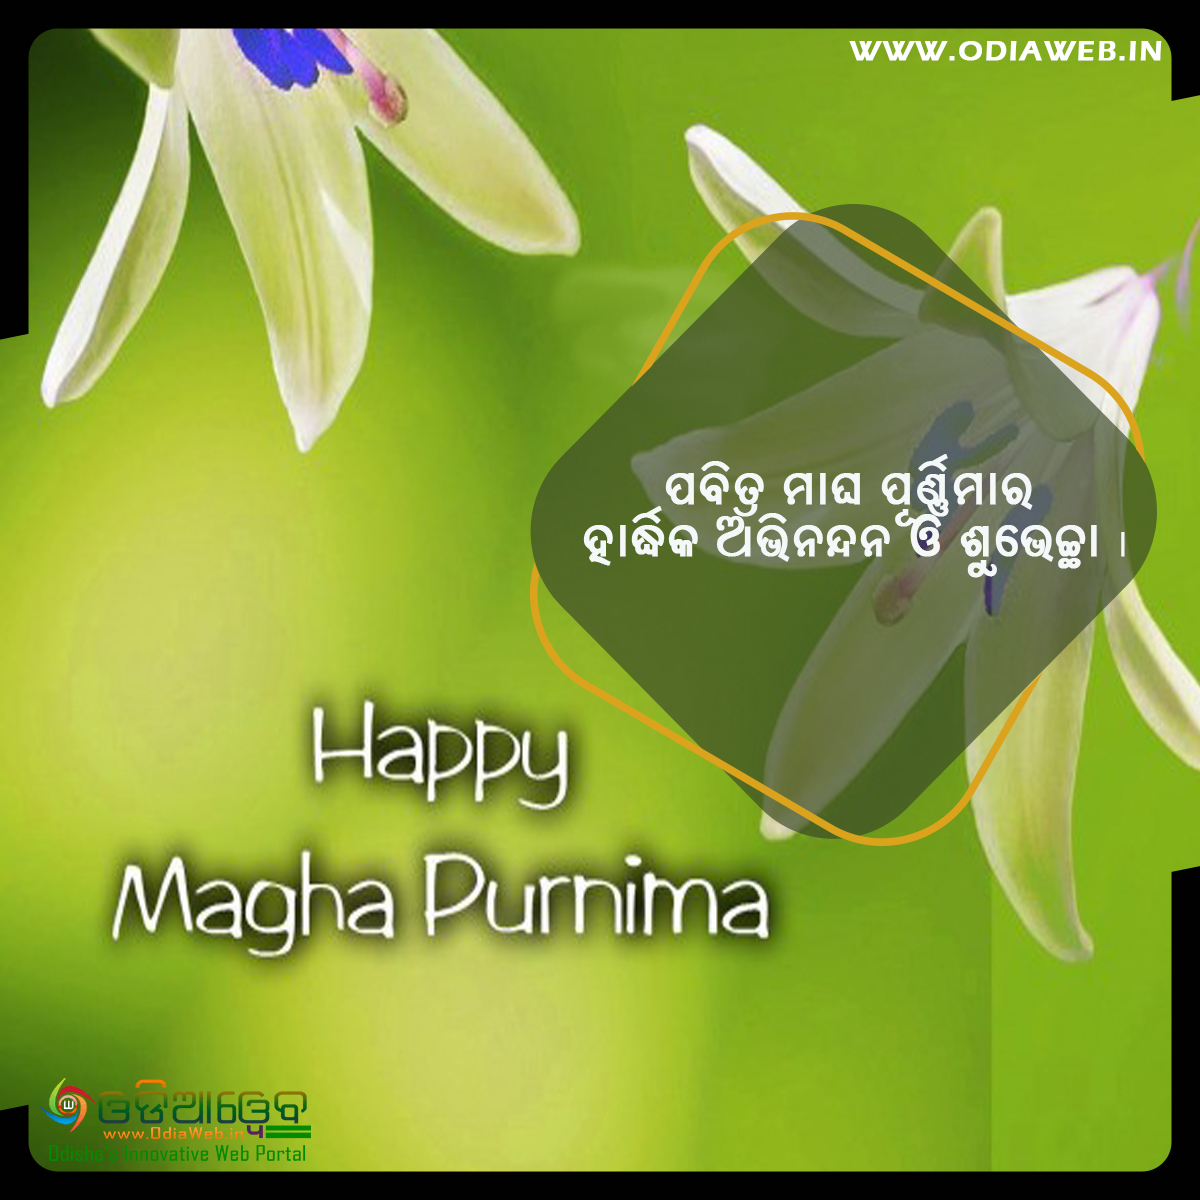 Happy Magha Purnima Odia Wishes